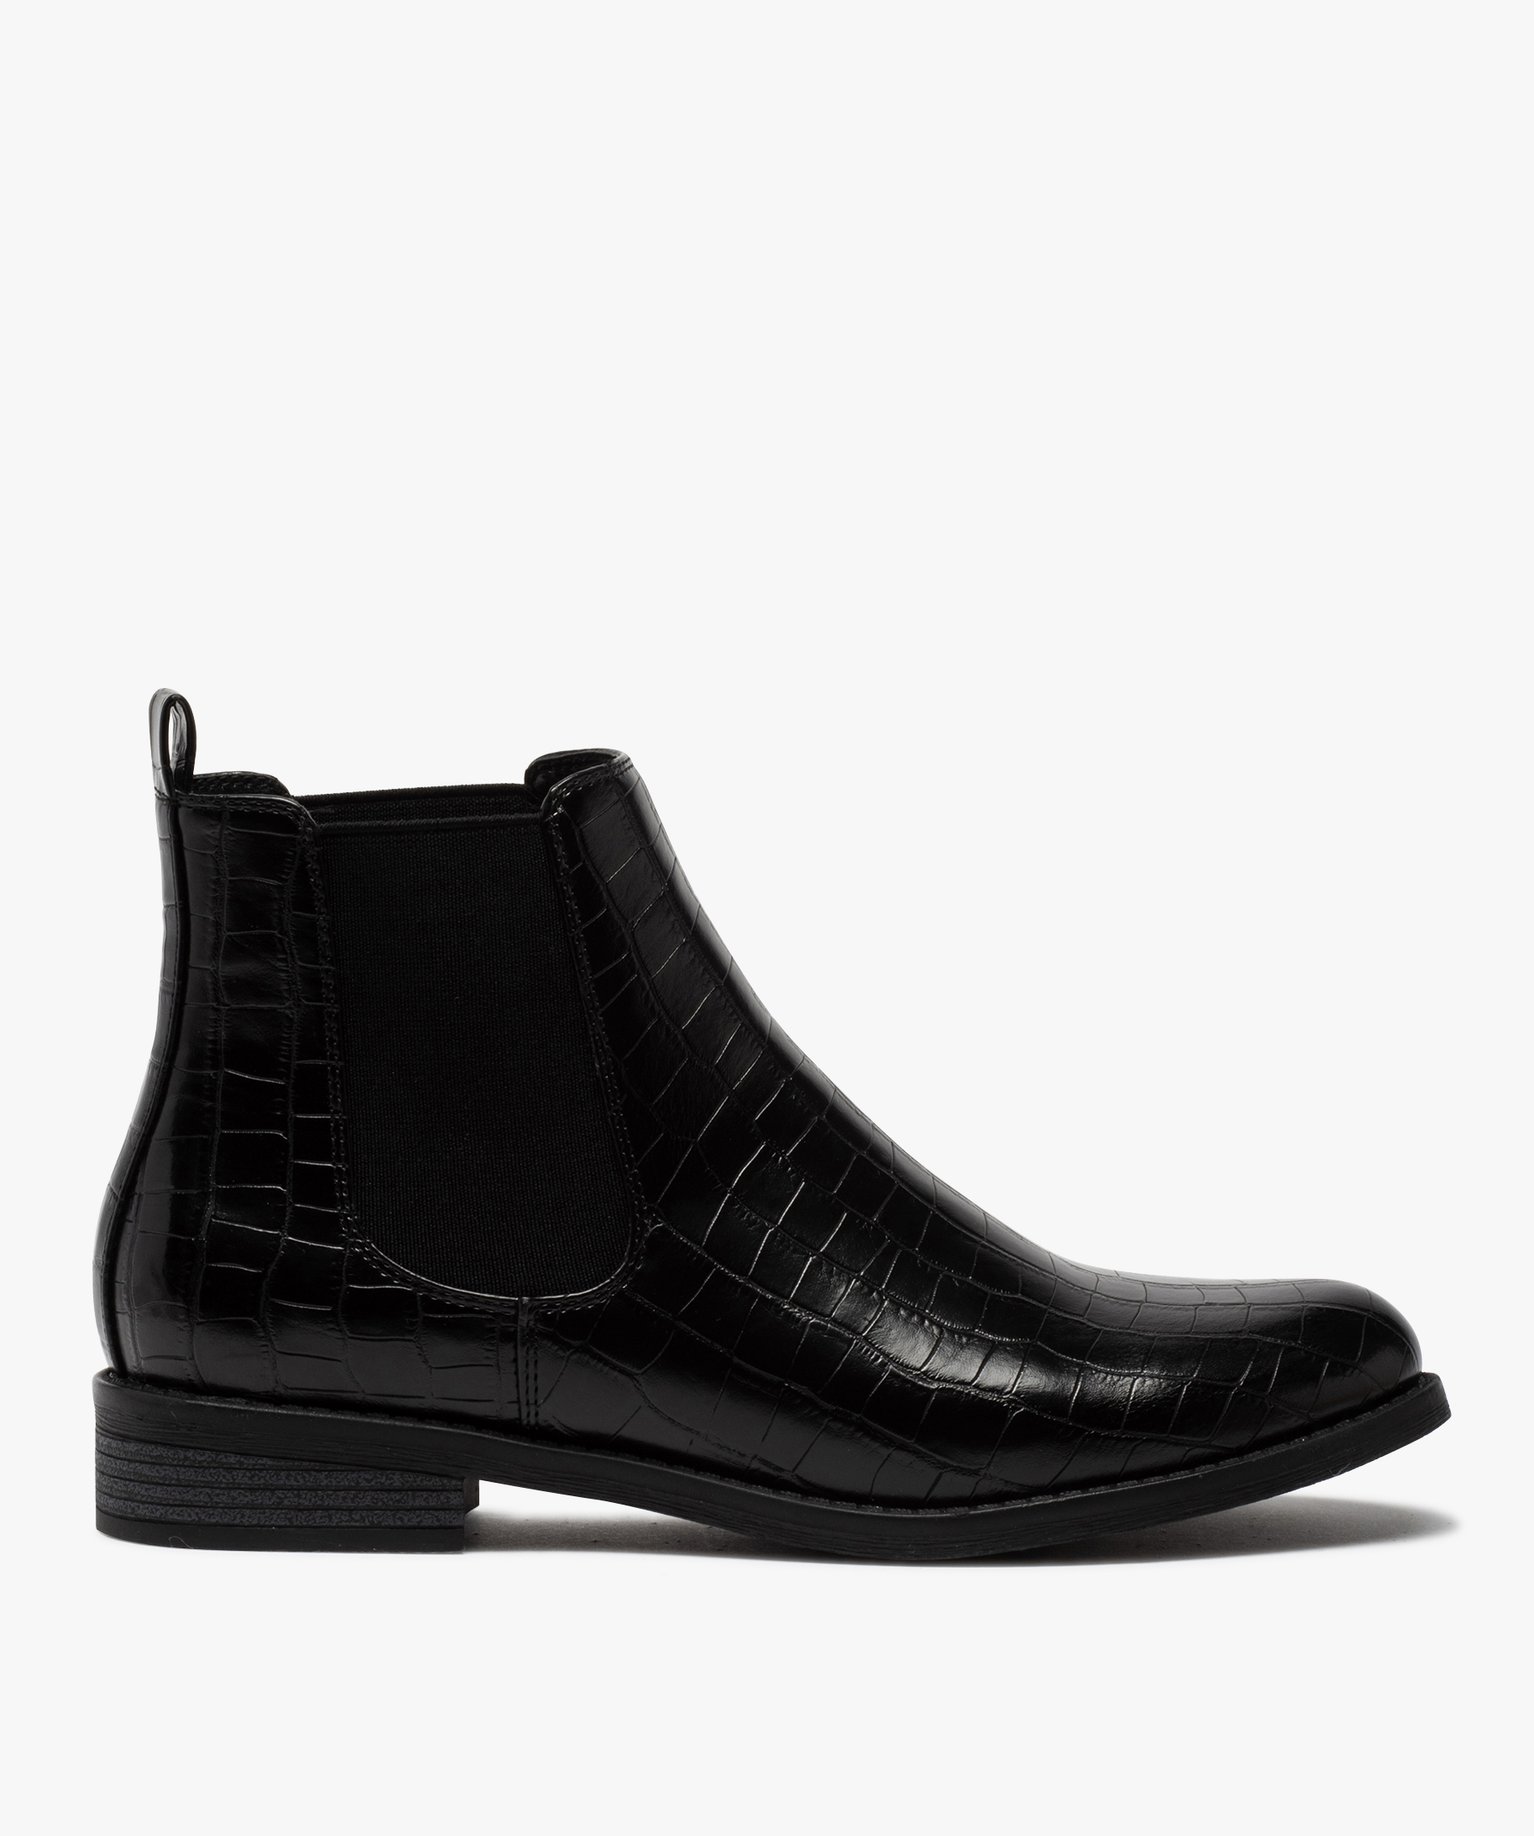 boots femme style chelsea unis imitation croco noir